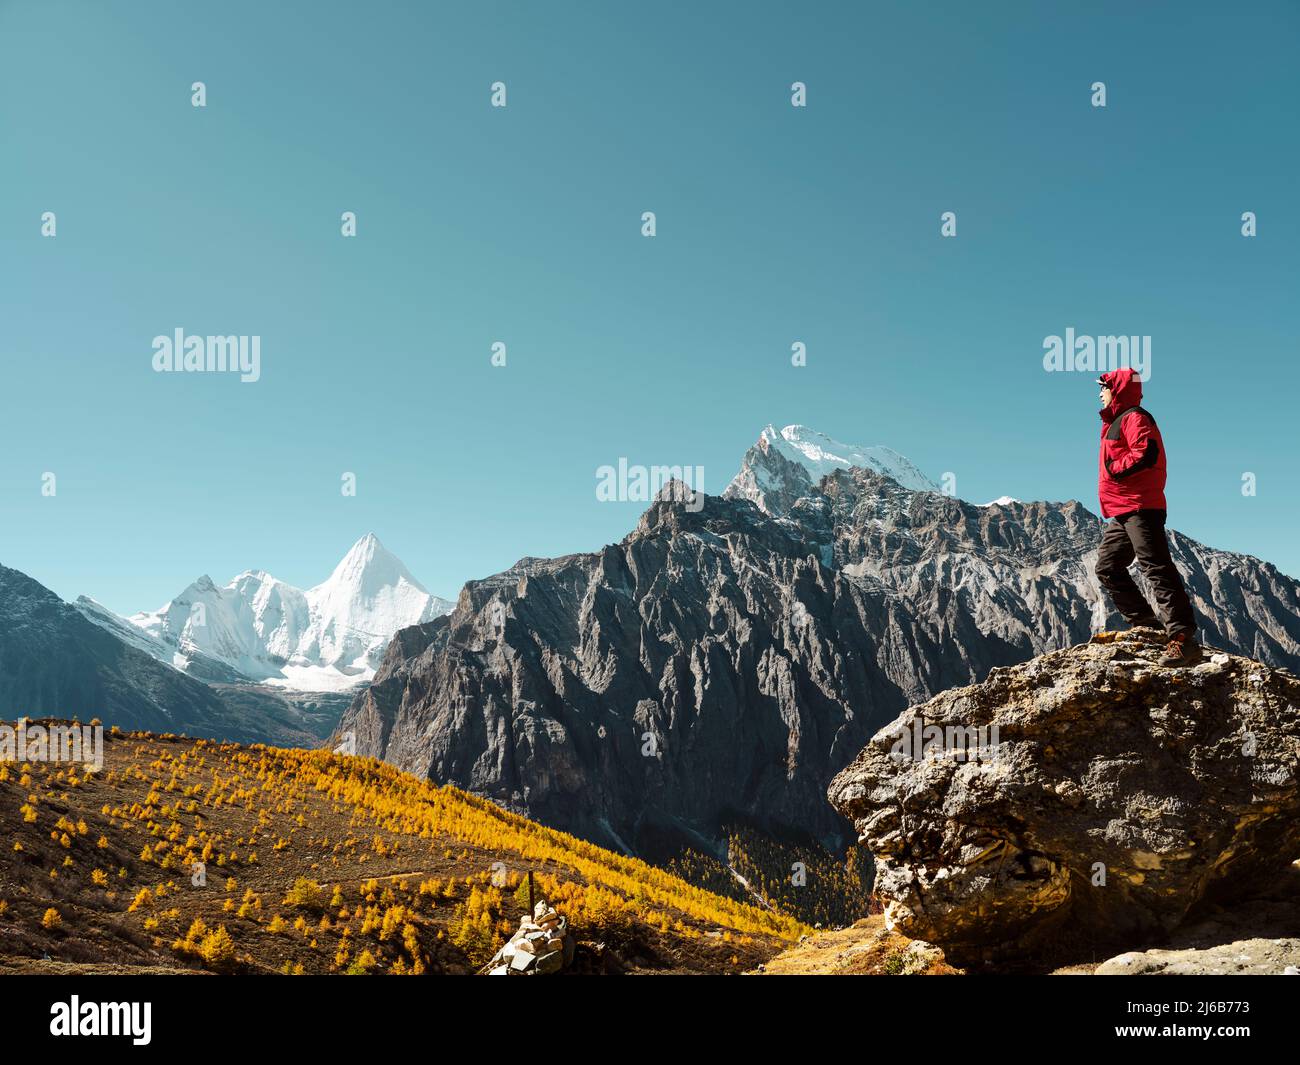 ein asiatischer Mann, der auf einem Felsen steht und den Berg Yangmaiyong (oder auf Tibetisch Jampayang) in der Ferne in Yading, Kreis Daocheng, Sichuan, anschaut Stockfoto